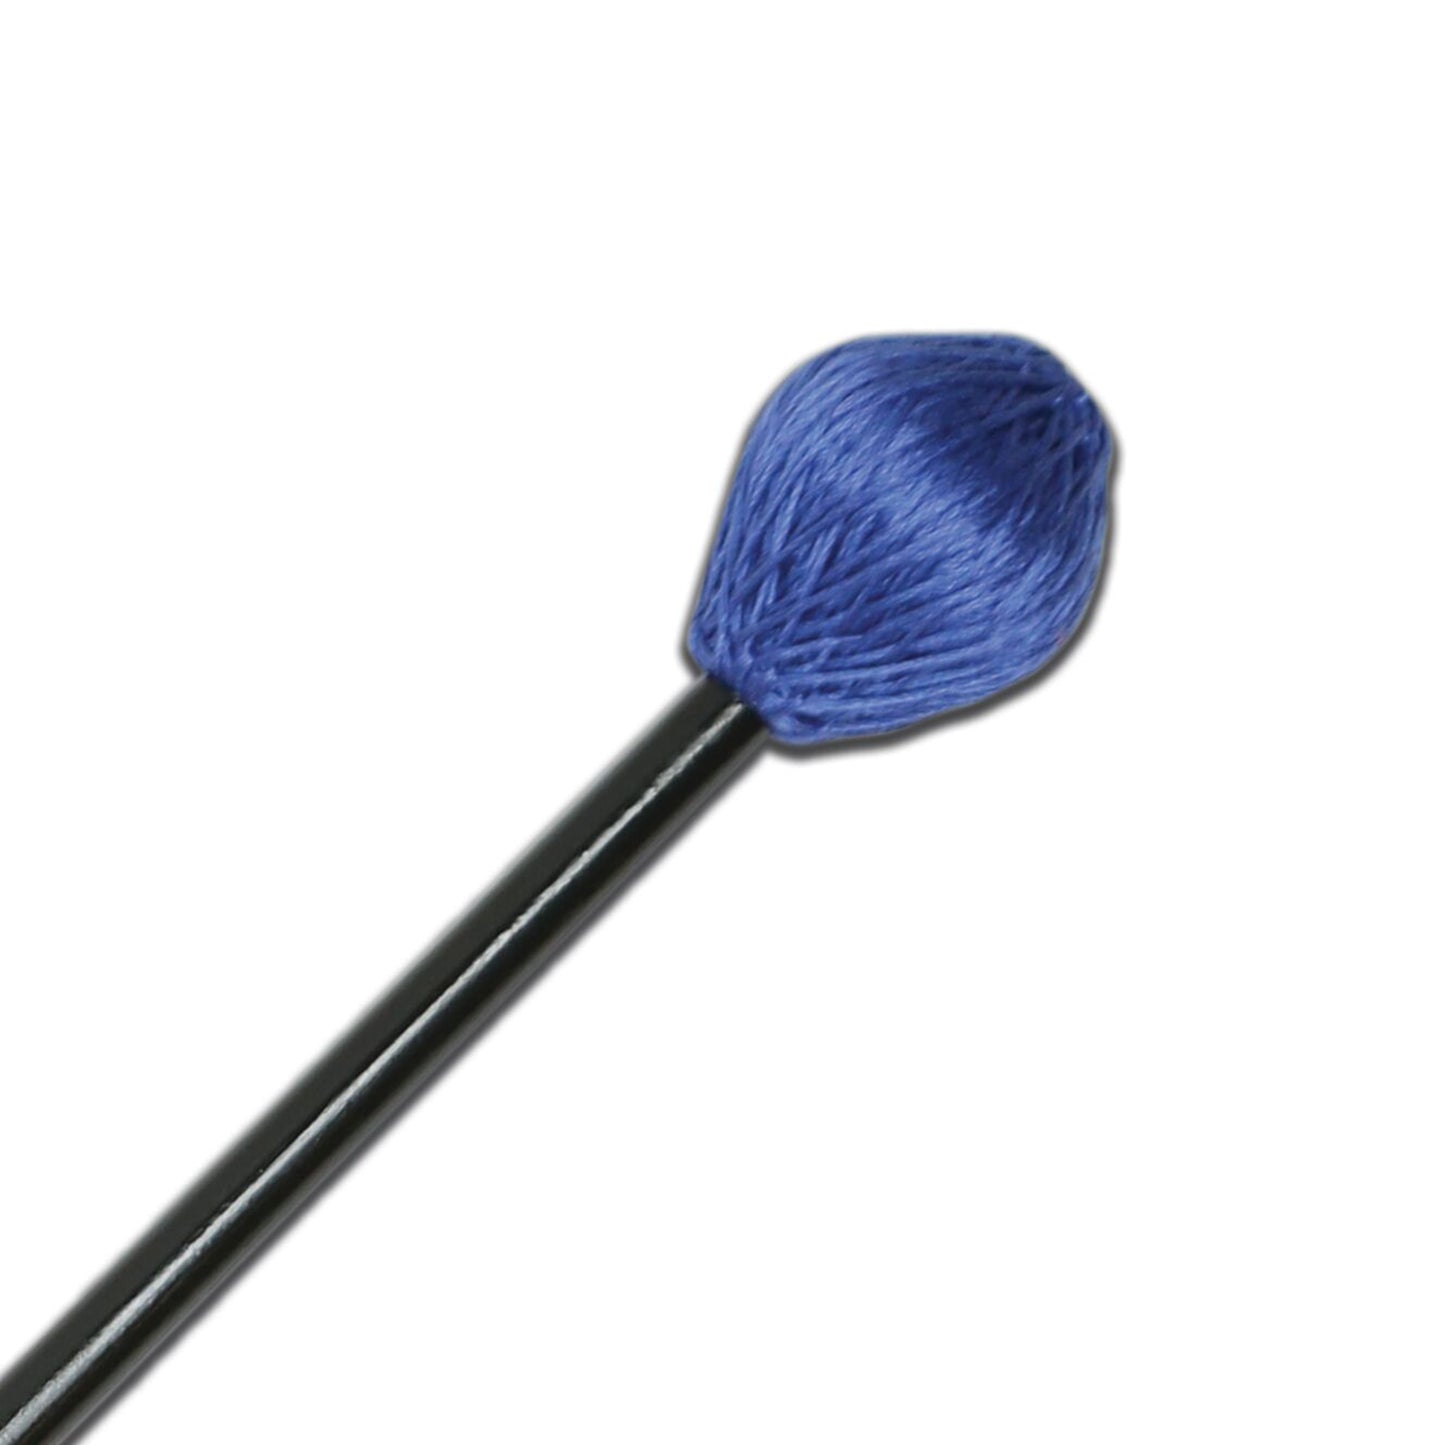 BBB5 - Balter Basics - Medium, Blue Cord Mallets